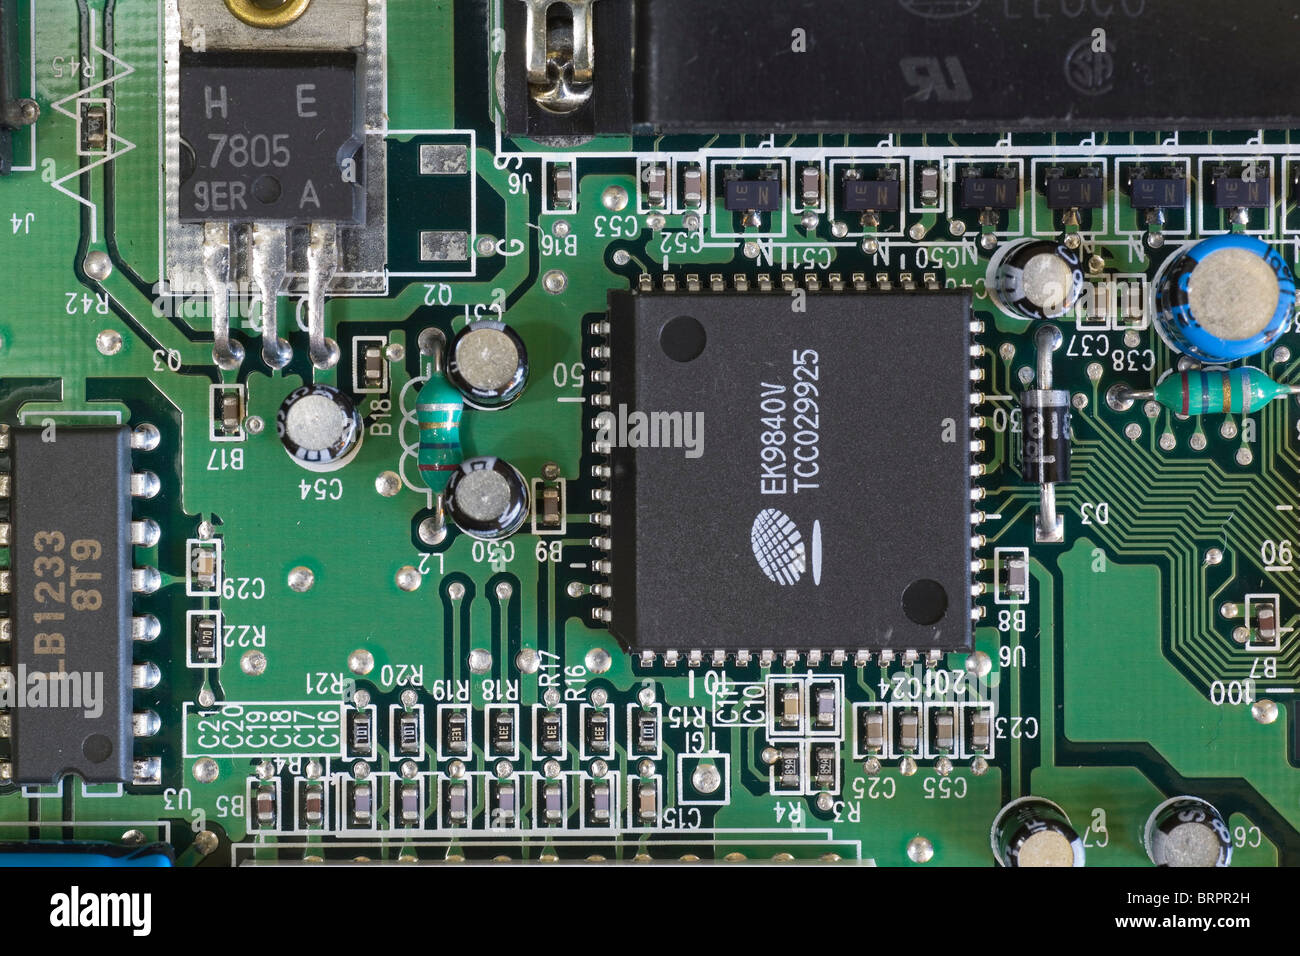 Componentes electrónicos y circuitos integrados micro chip de silicio sobre una placa de circuitos de la motherboard. Foto de stock